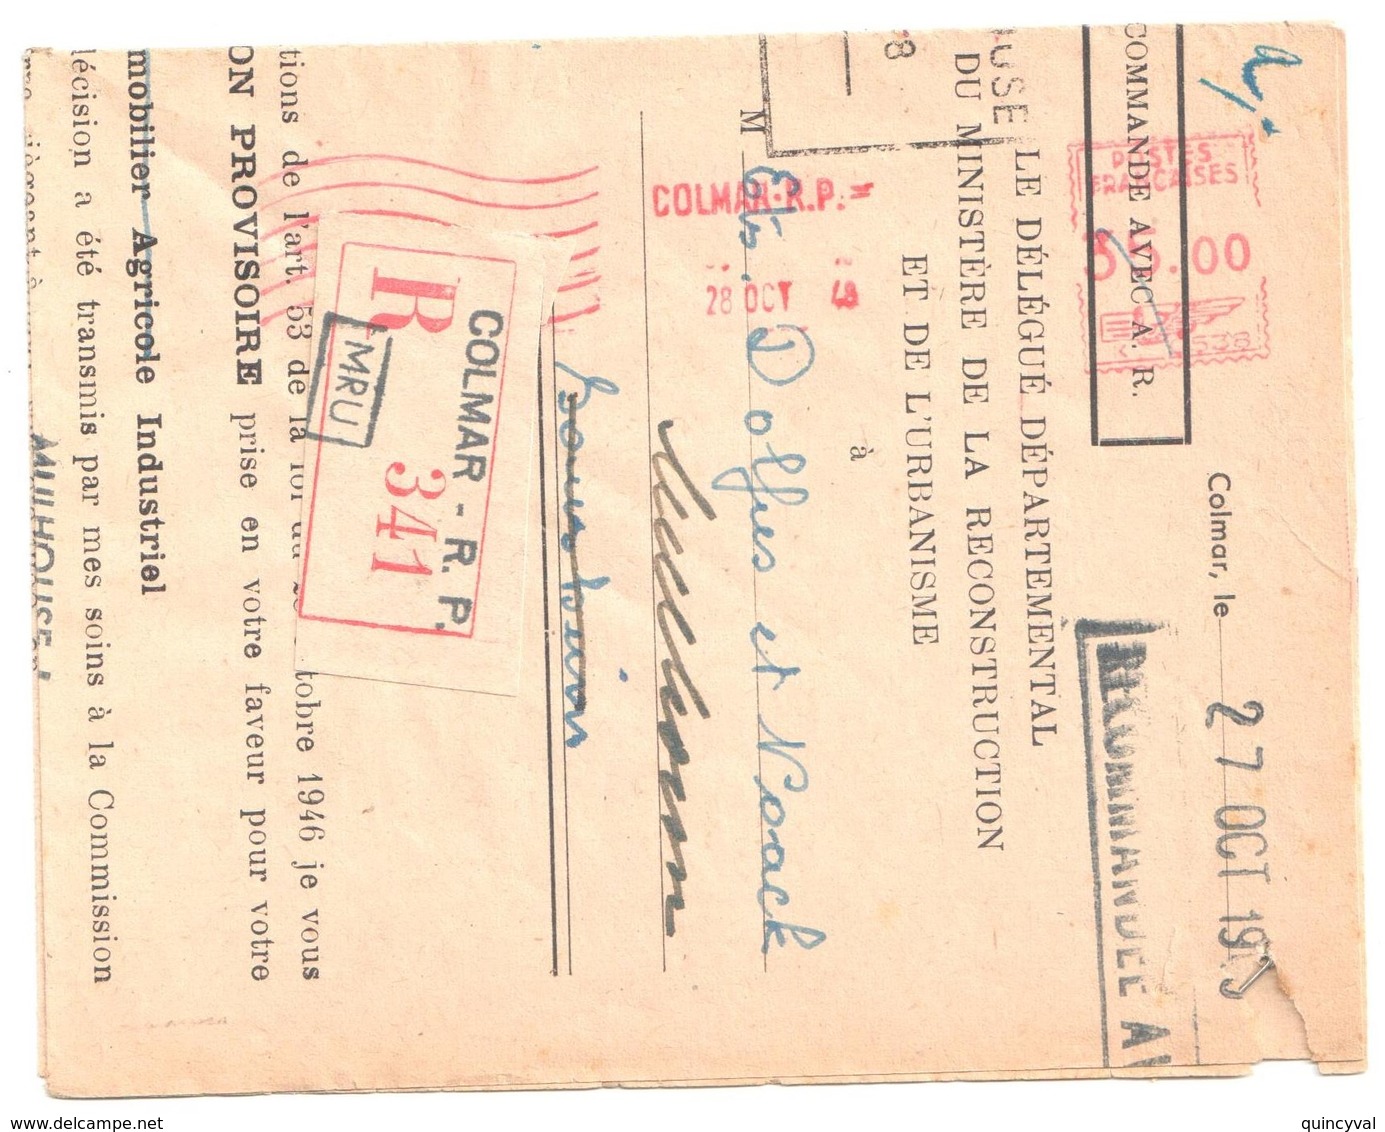 COLMAR RP Lettre Recommandée 28 10 1948 EMA Postes Françaises K Dest Sausheimb Ob Hexa Pointillé - Freistempel